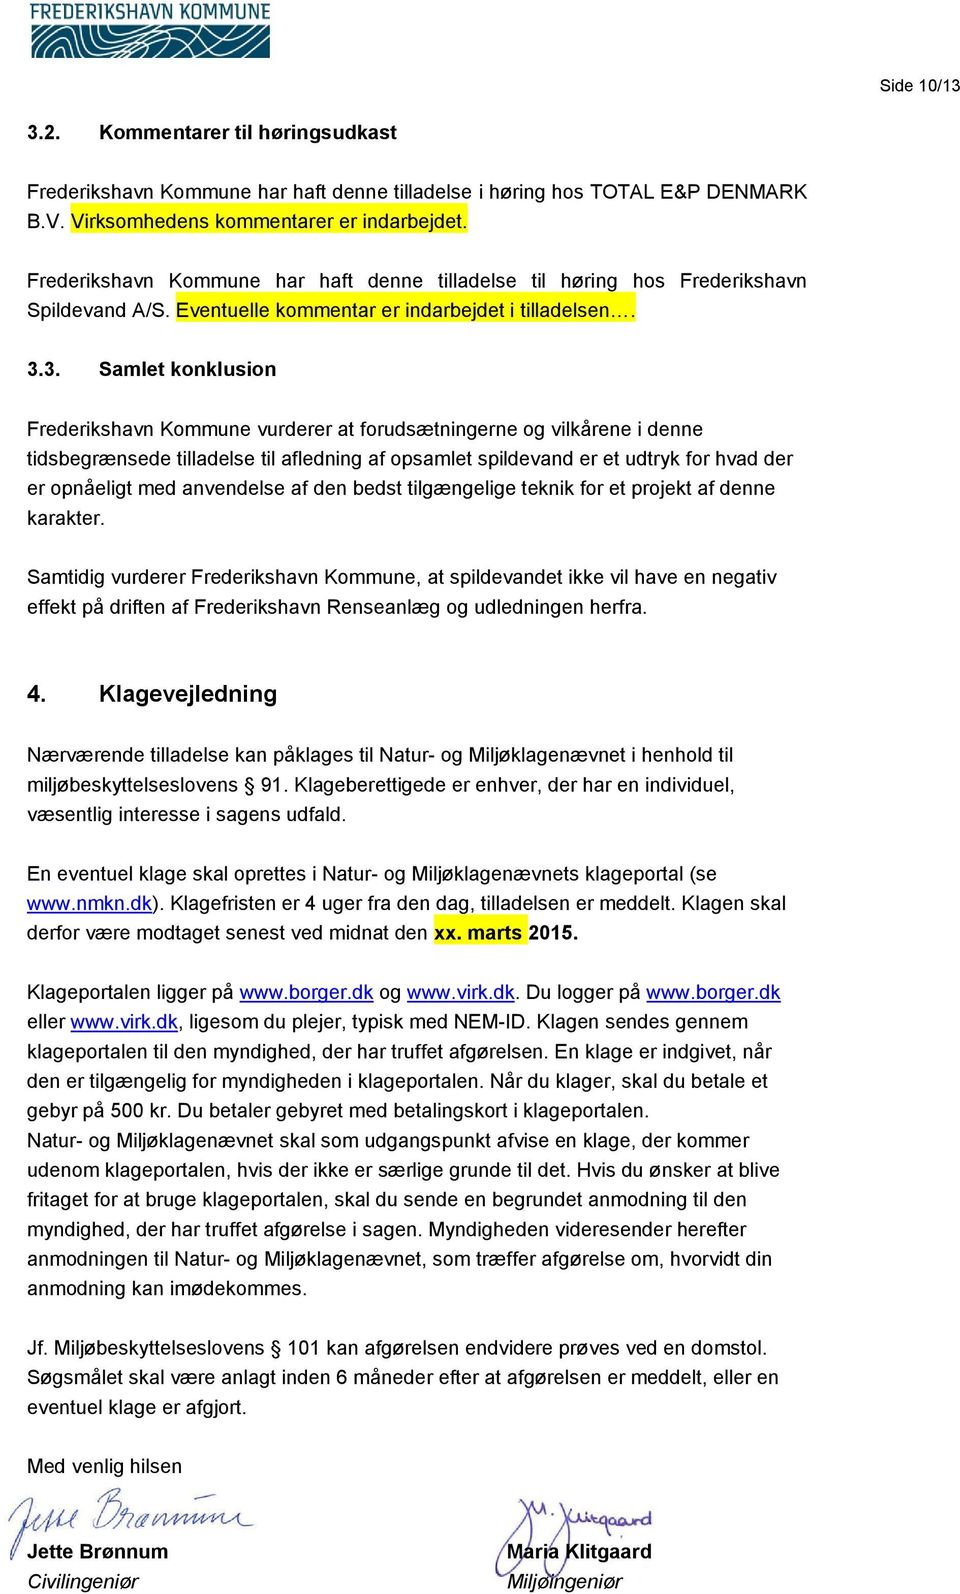 3. Samlet konklusion Frederikshavn Kommune vurderer at forudsætningerne og vilkårene i denne tidsbegrænsede tilladelse til afledning af opsamlet spildevand er et udtryk for hvad der er opnåeligt med